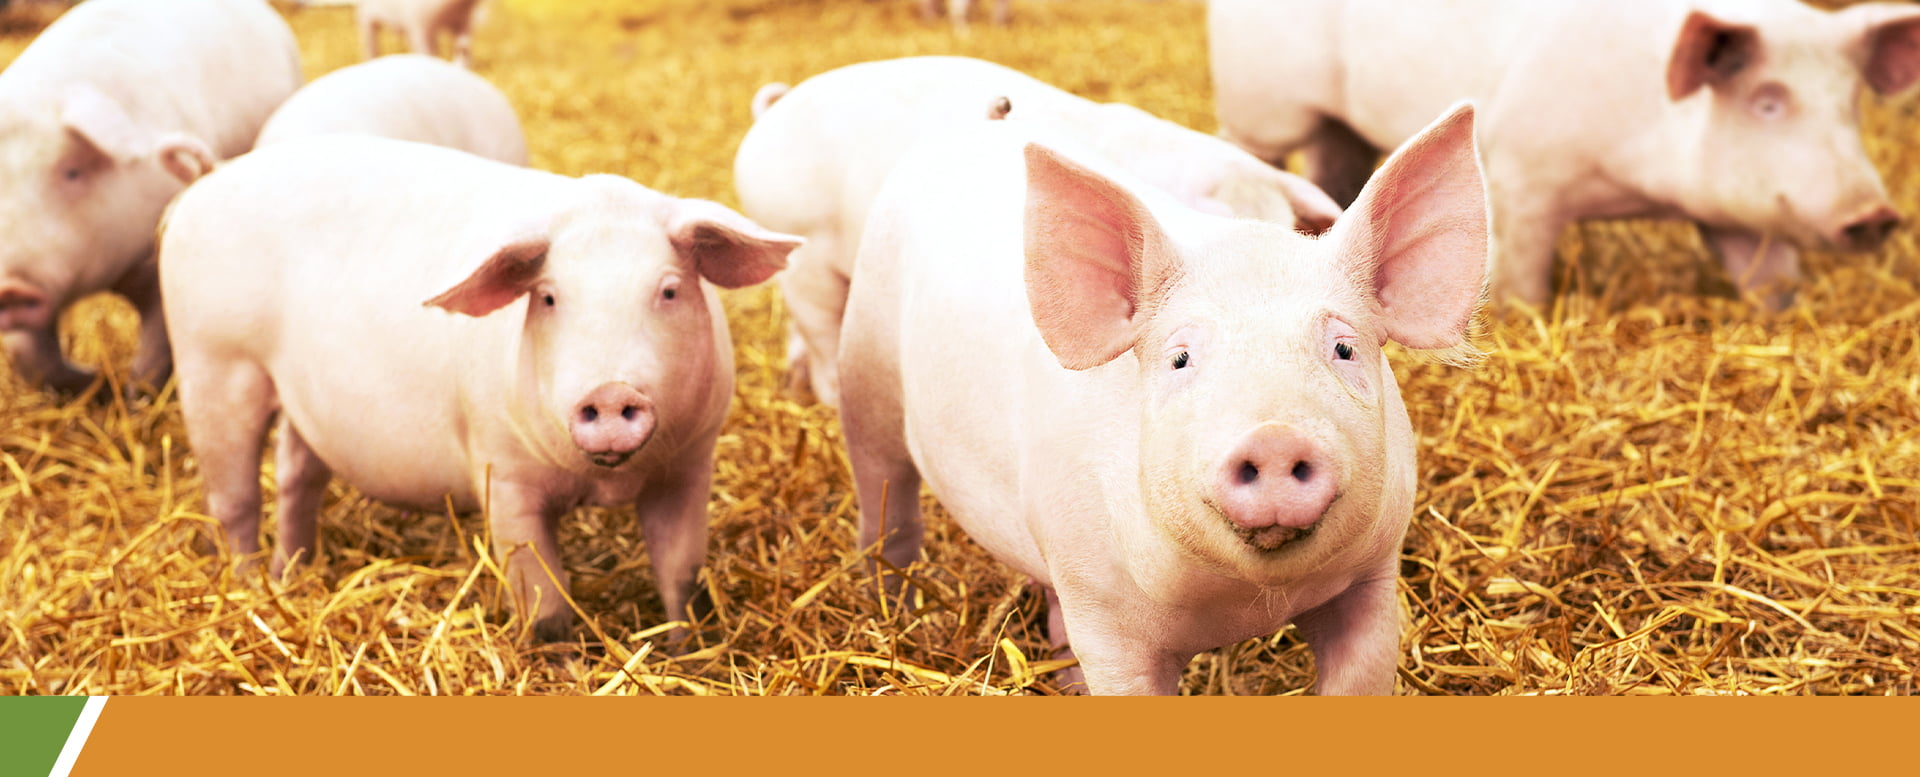 Importancia de los programas de bioseguridad para el uso prudente de antibióticos en la porcicultura